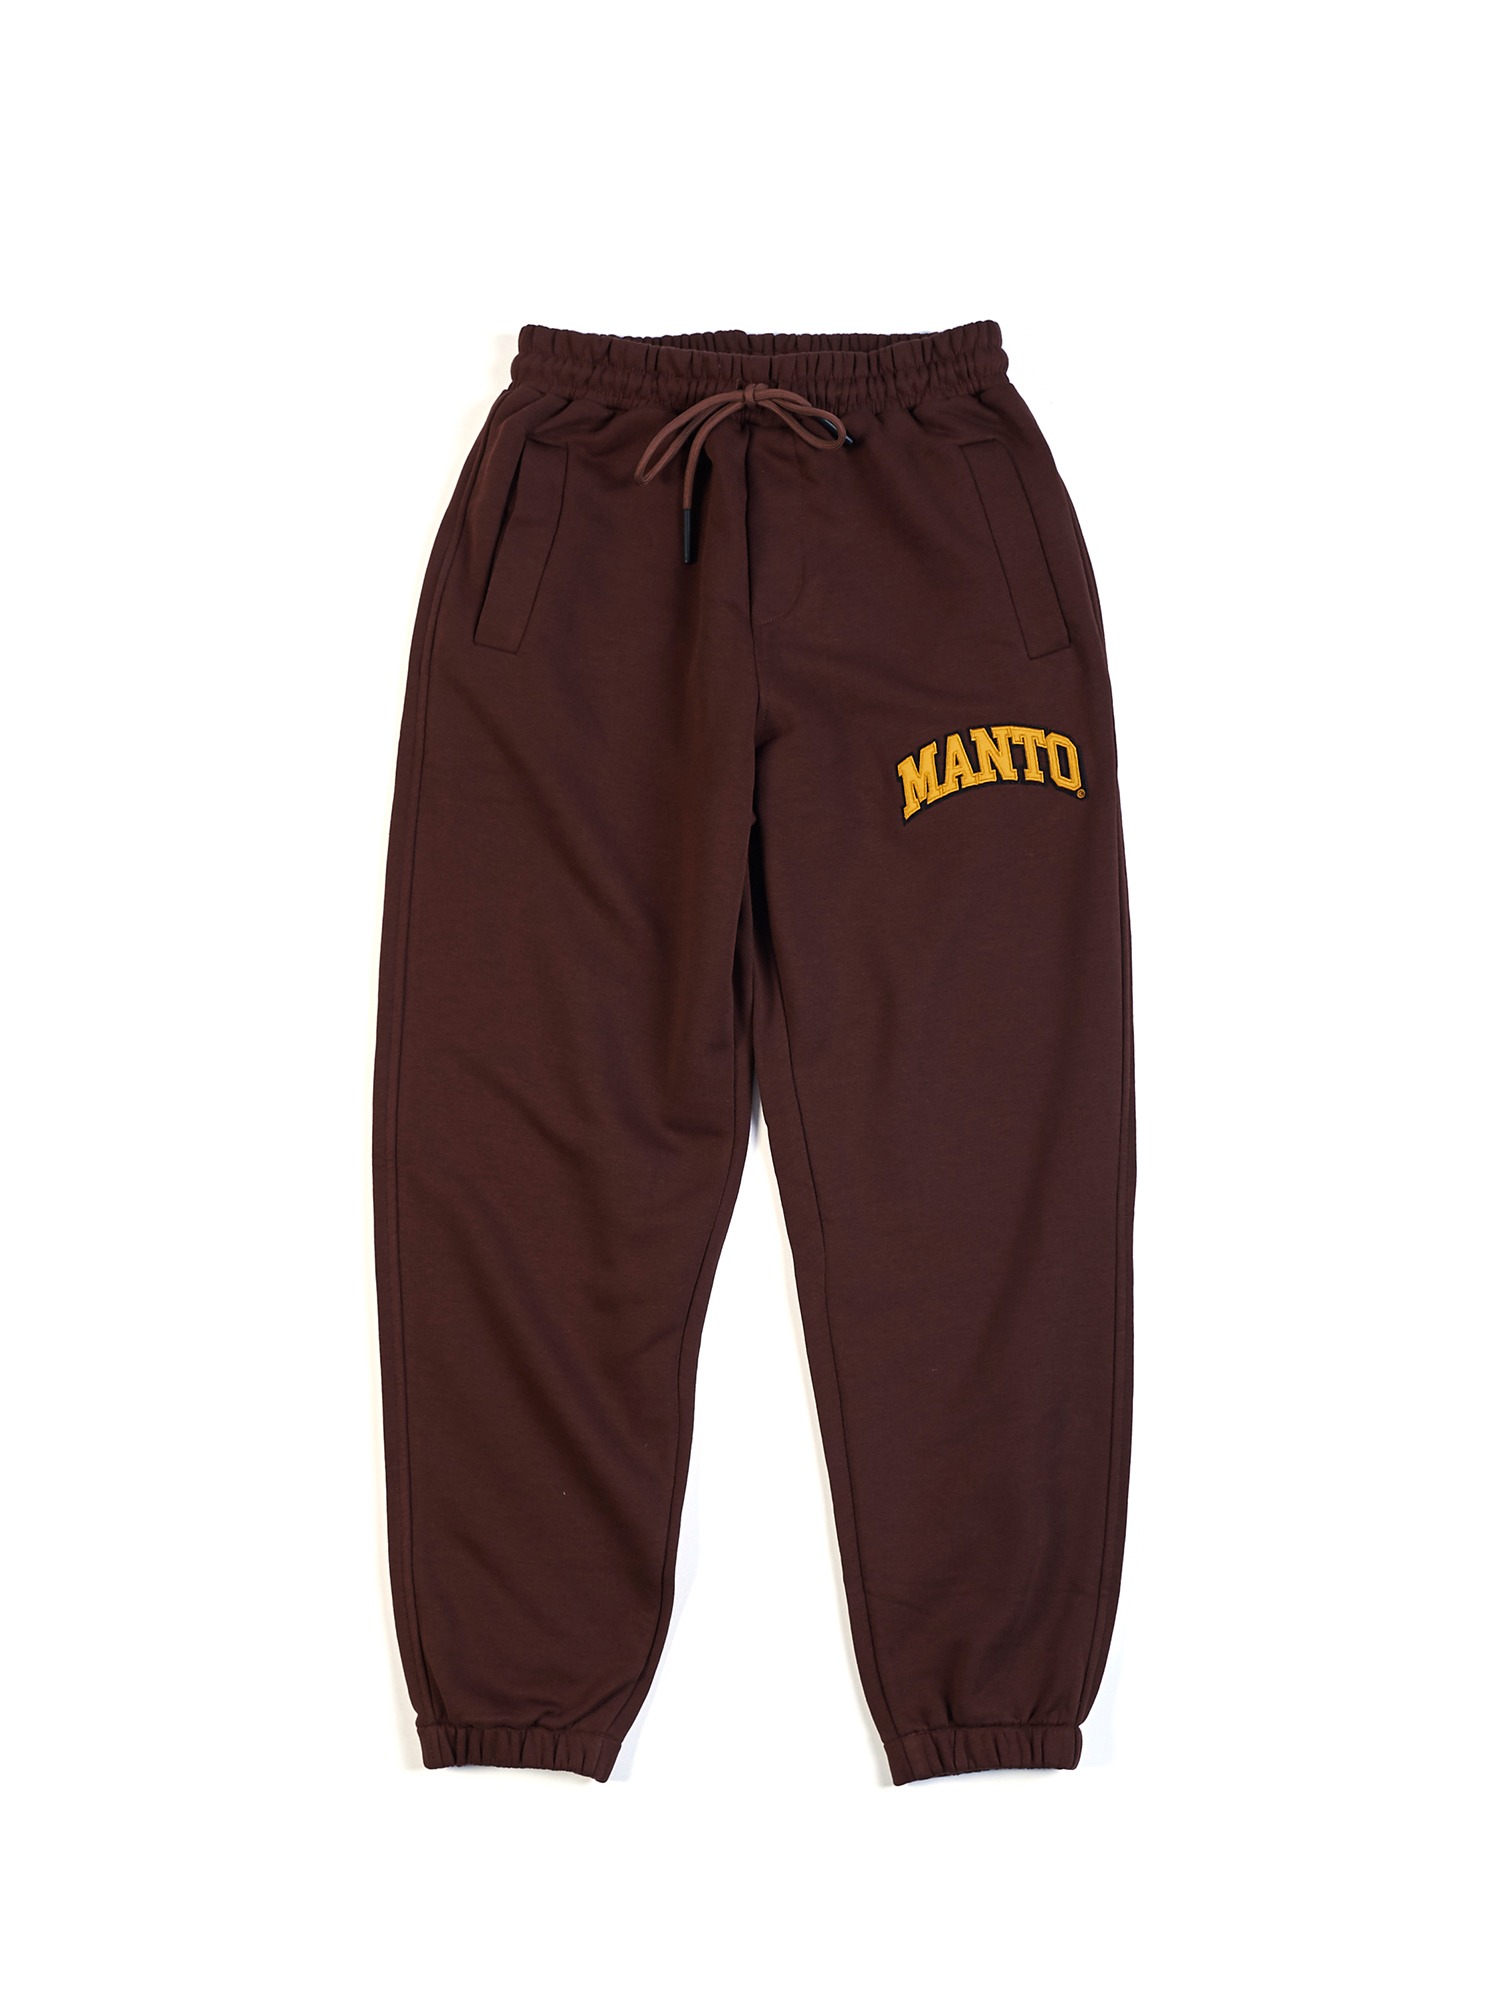 Спортивные брюки мужские MANTO man192 коричневые M